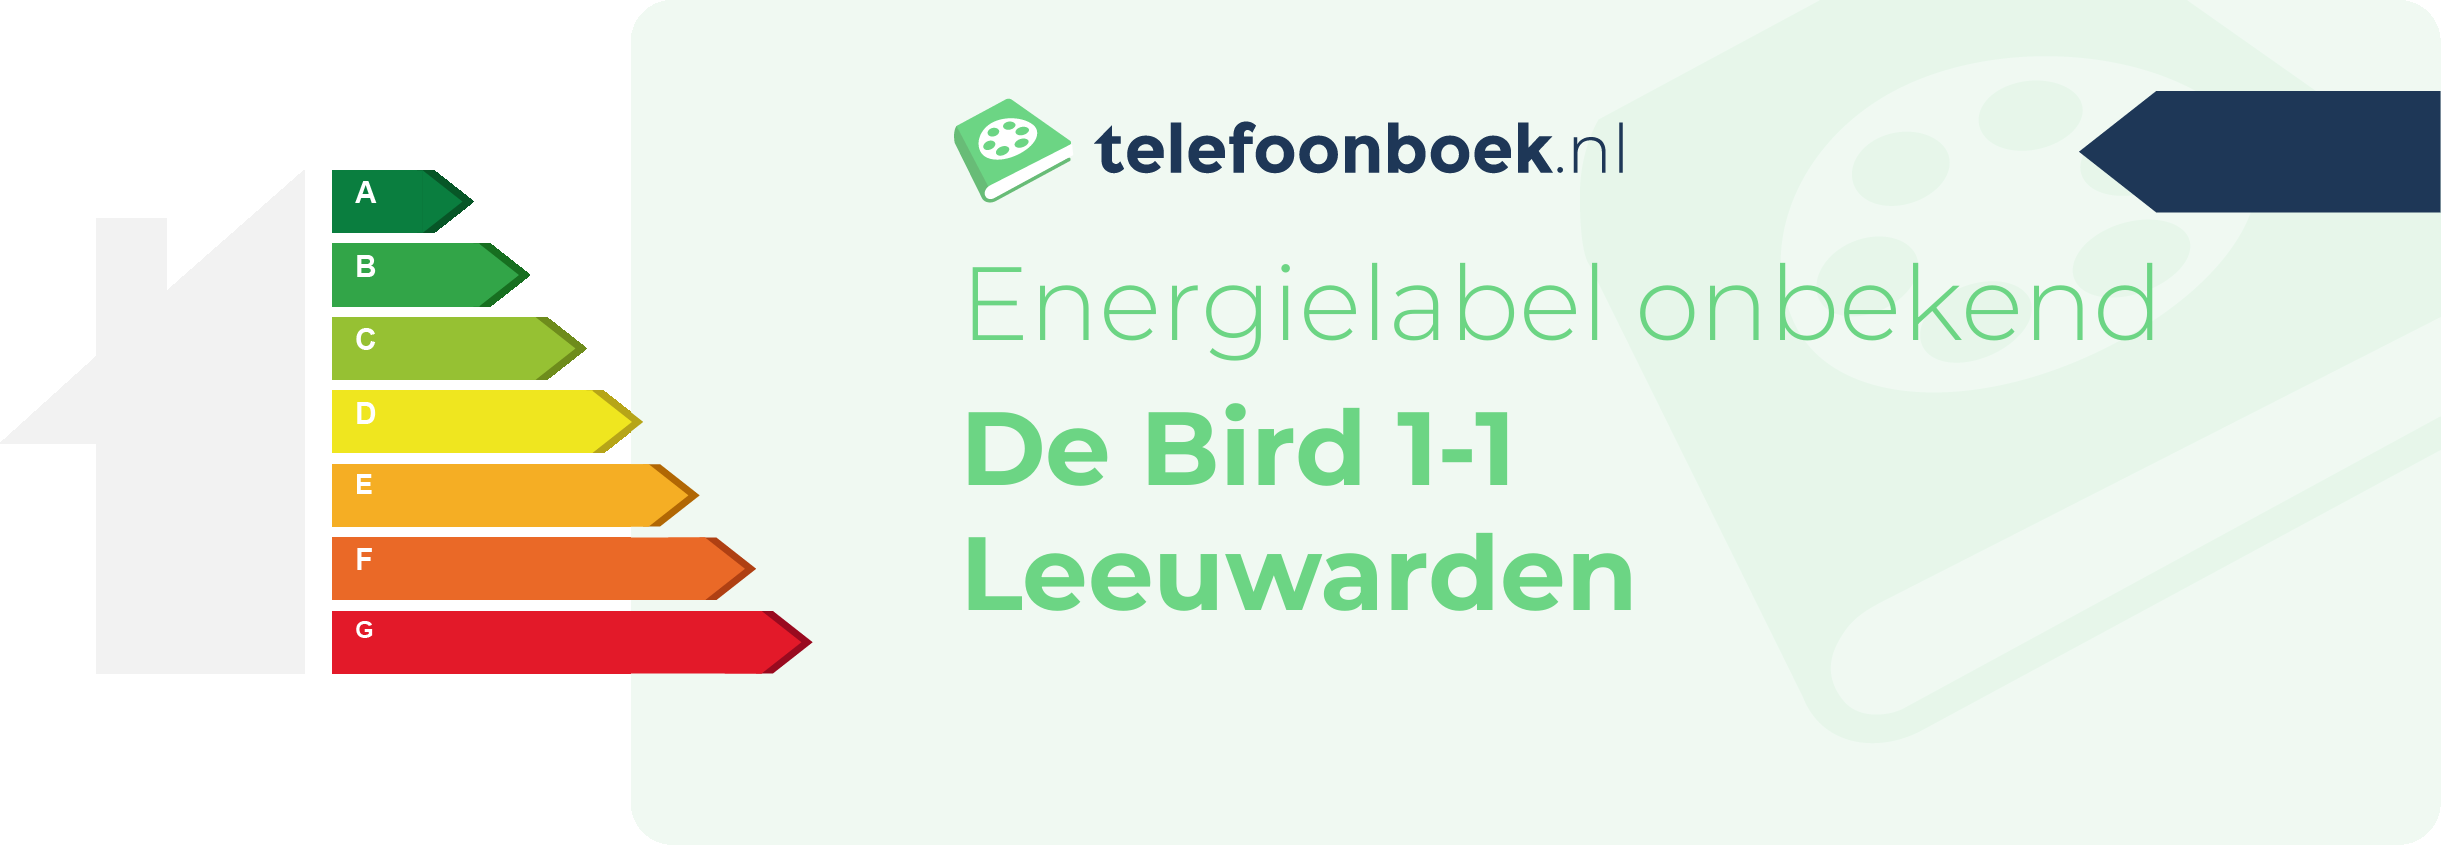 Energielabel De Bird 1-1 Leeuwarden